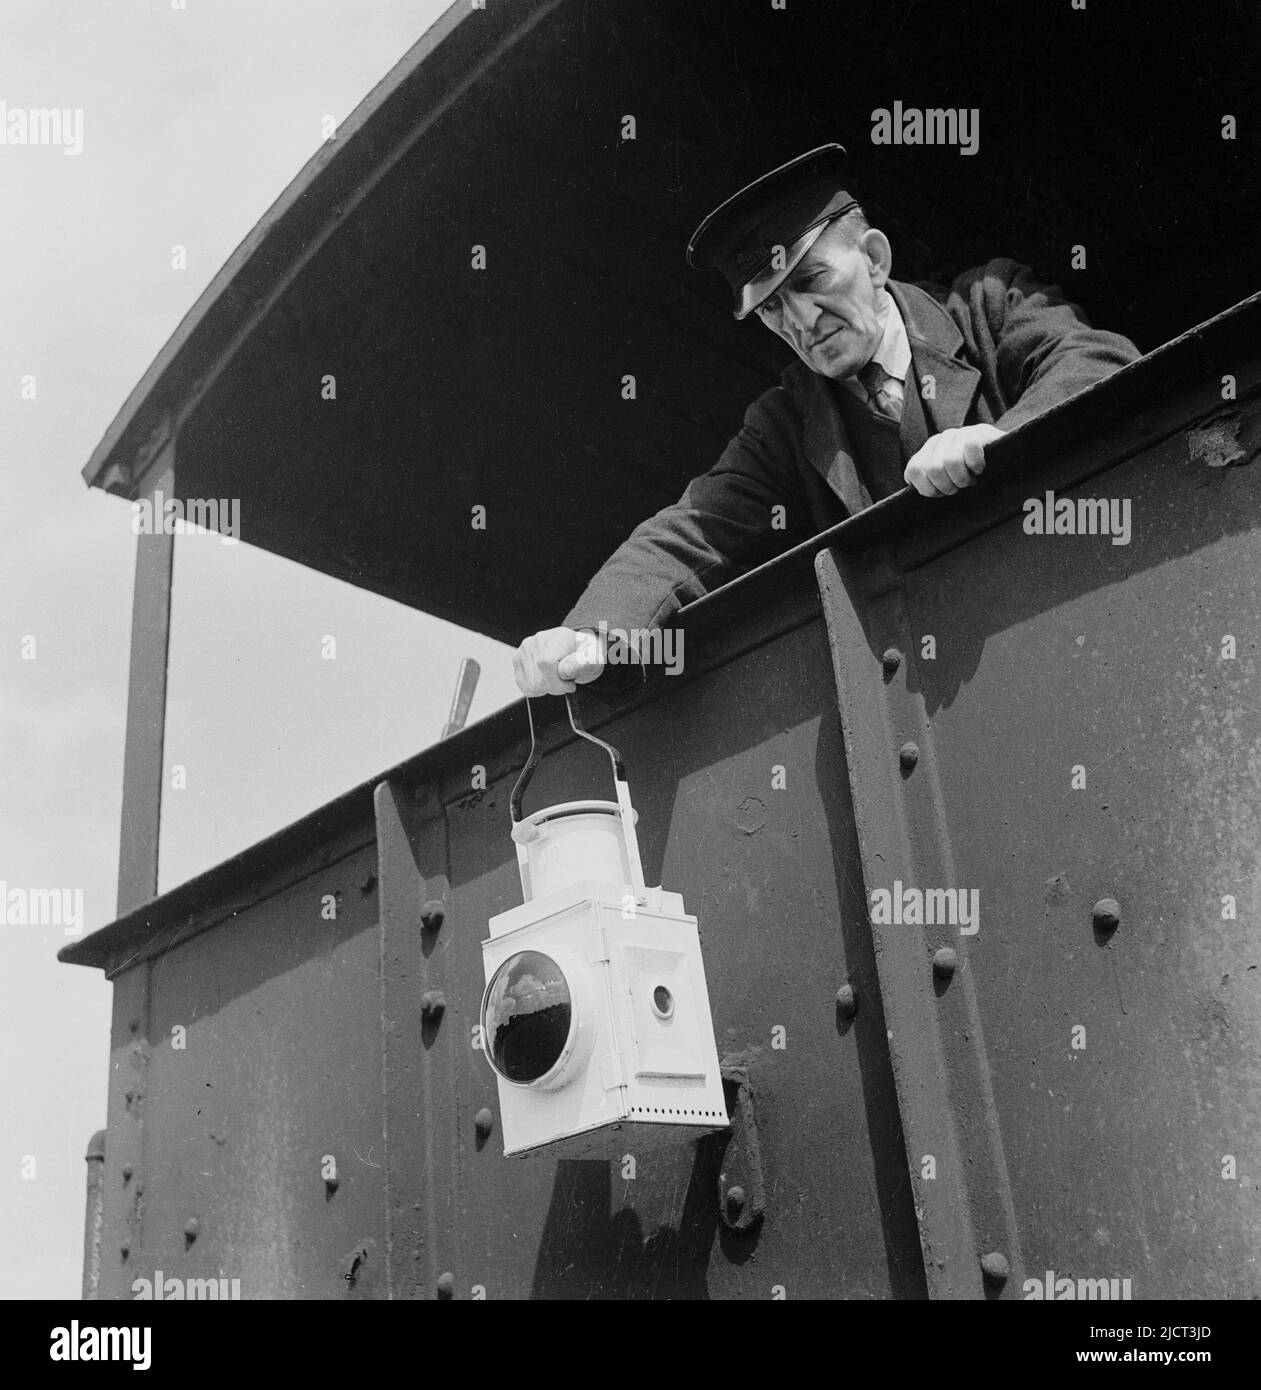 1950s, storico, guardia ferroviaria in uniforme che fissa una lanterna di avvertimento sul retro di un trasporto merci di Great Western Railways, London Docks, Londra, Inghilterra, Regno Unito. Foto Stock